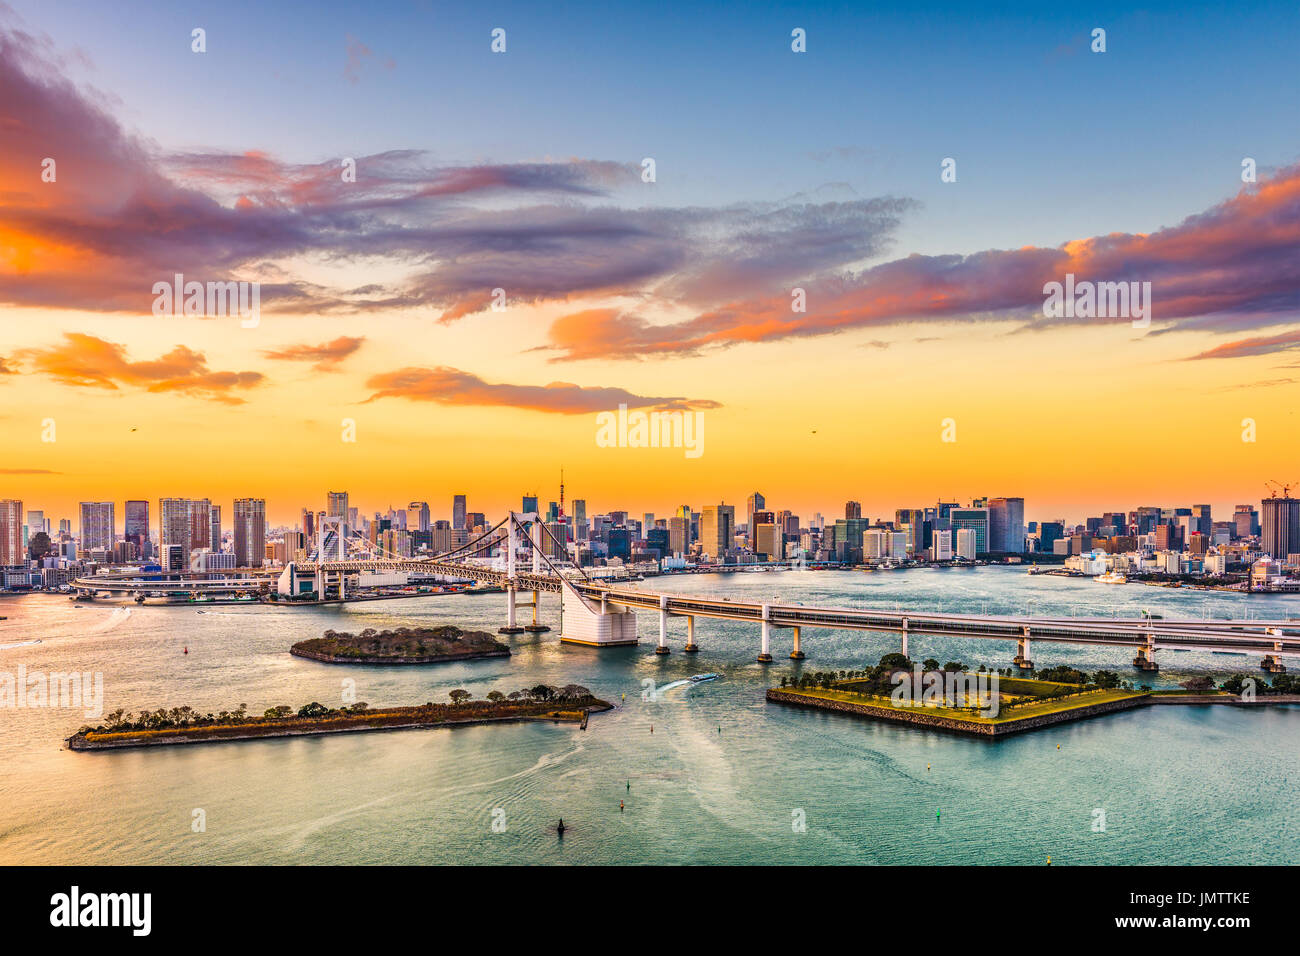 Tokio, Japón, el horizonte de la bahía con el Puente del Arco Iris. Foto de stock